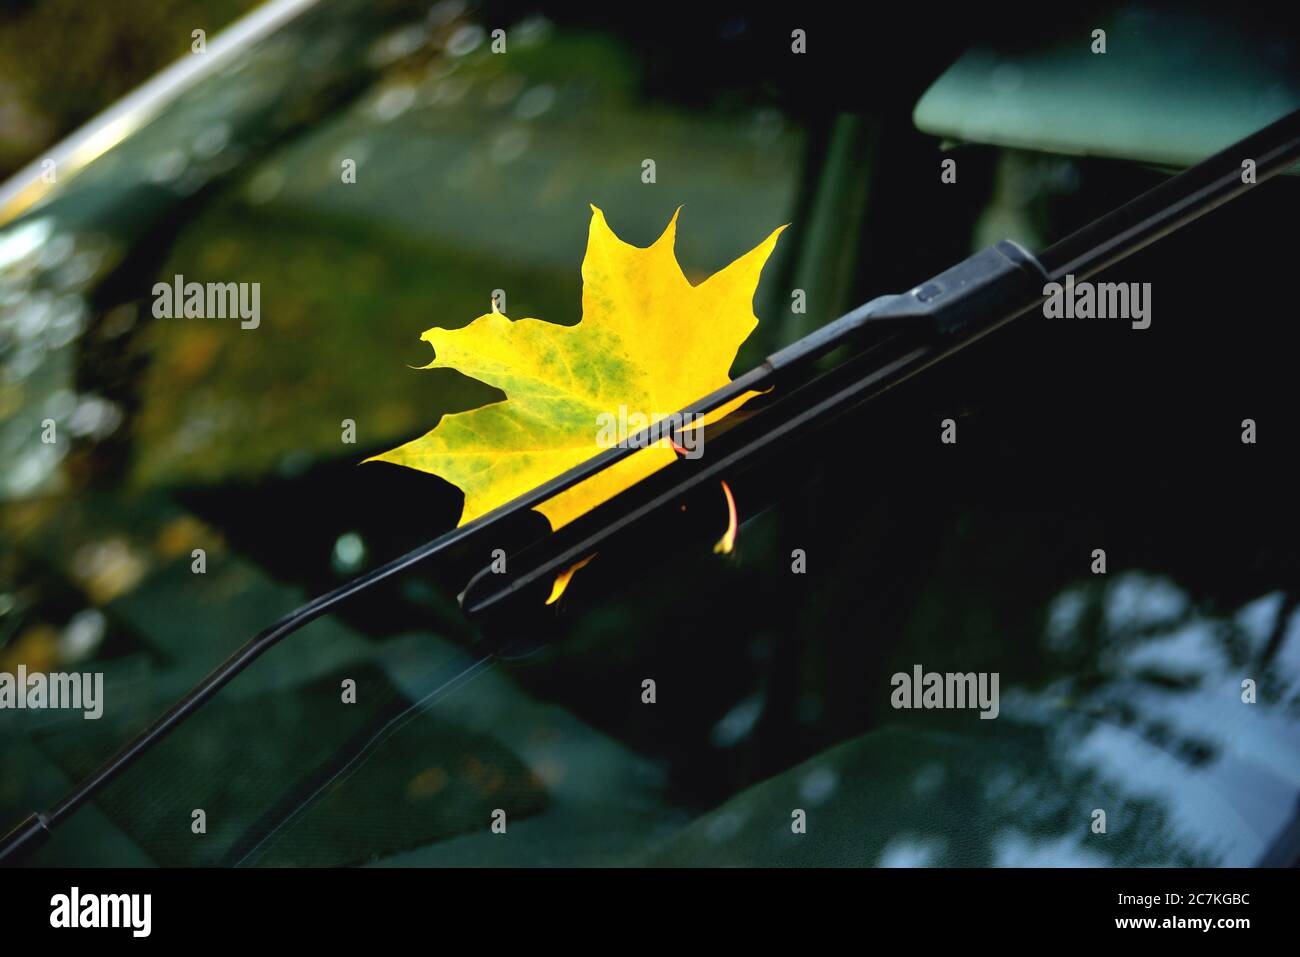 Hoja de arce amarillo de otoño en el cristal del coche, reflejo en el cristal, árboles de otoño hermoso brillo primer plano Foto de stock